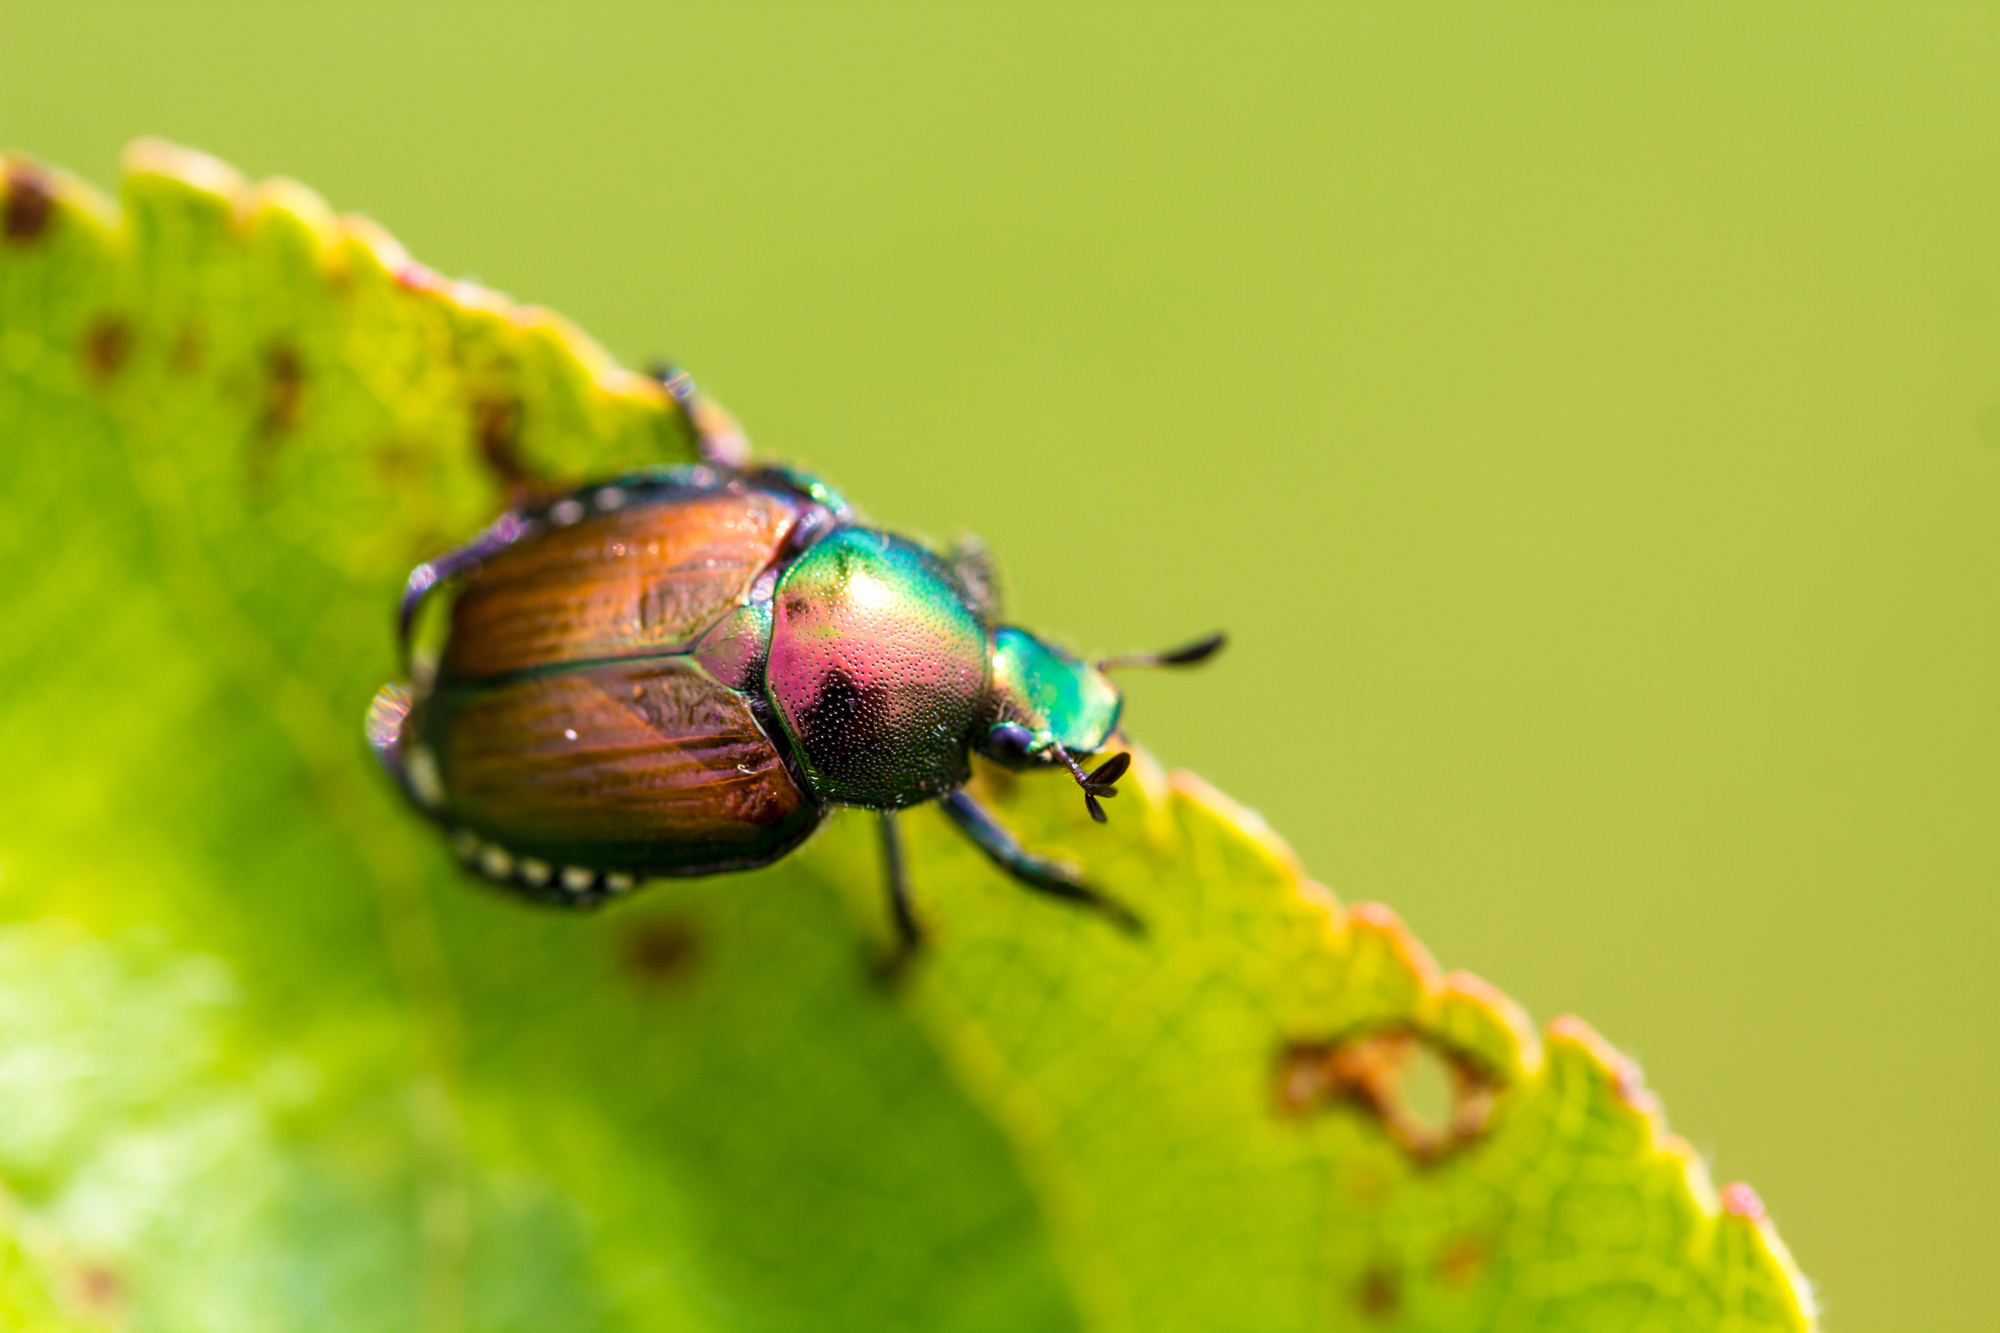 Japanese beetle (Popillia japonica) on fruit tree leaf